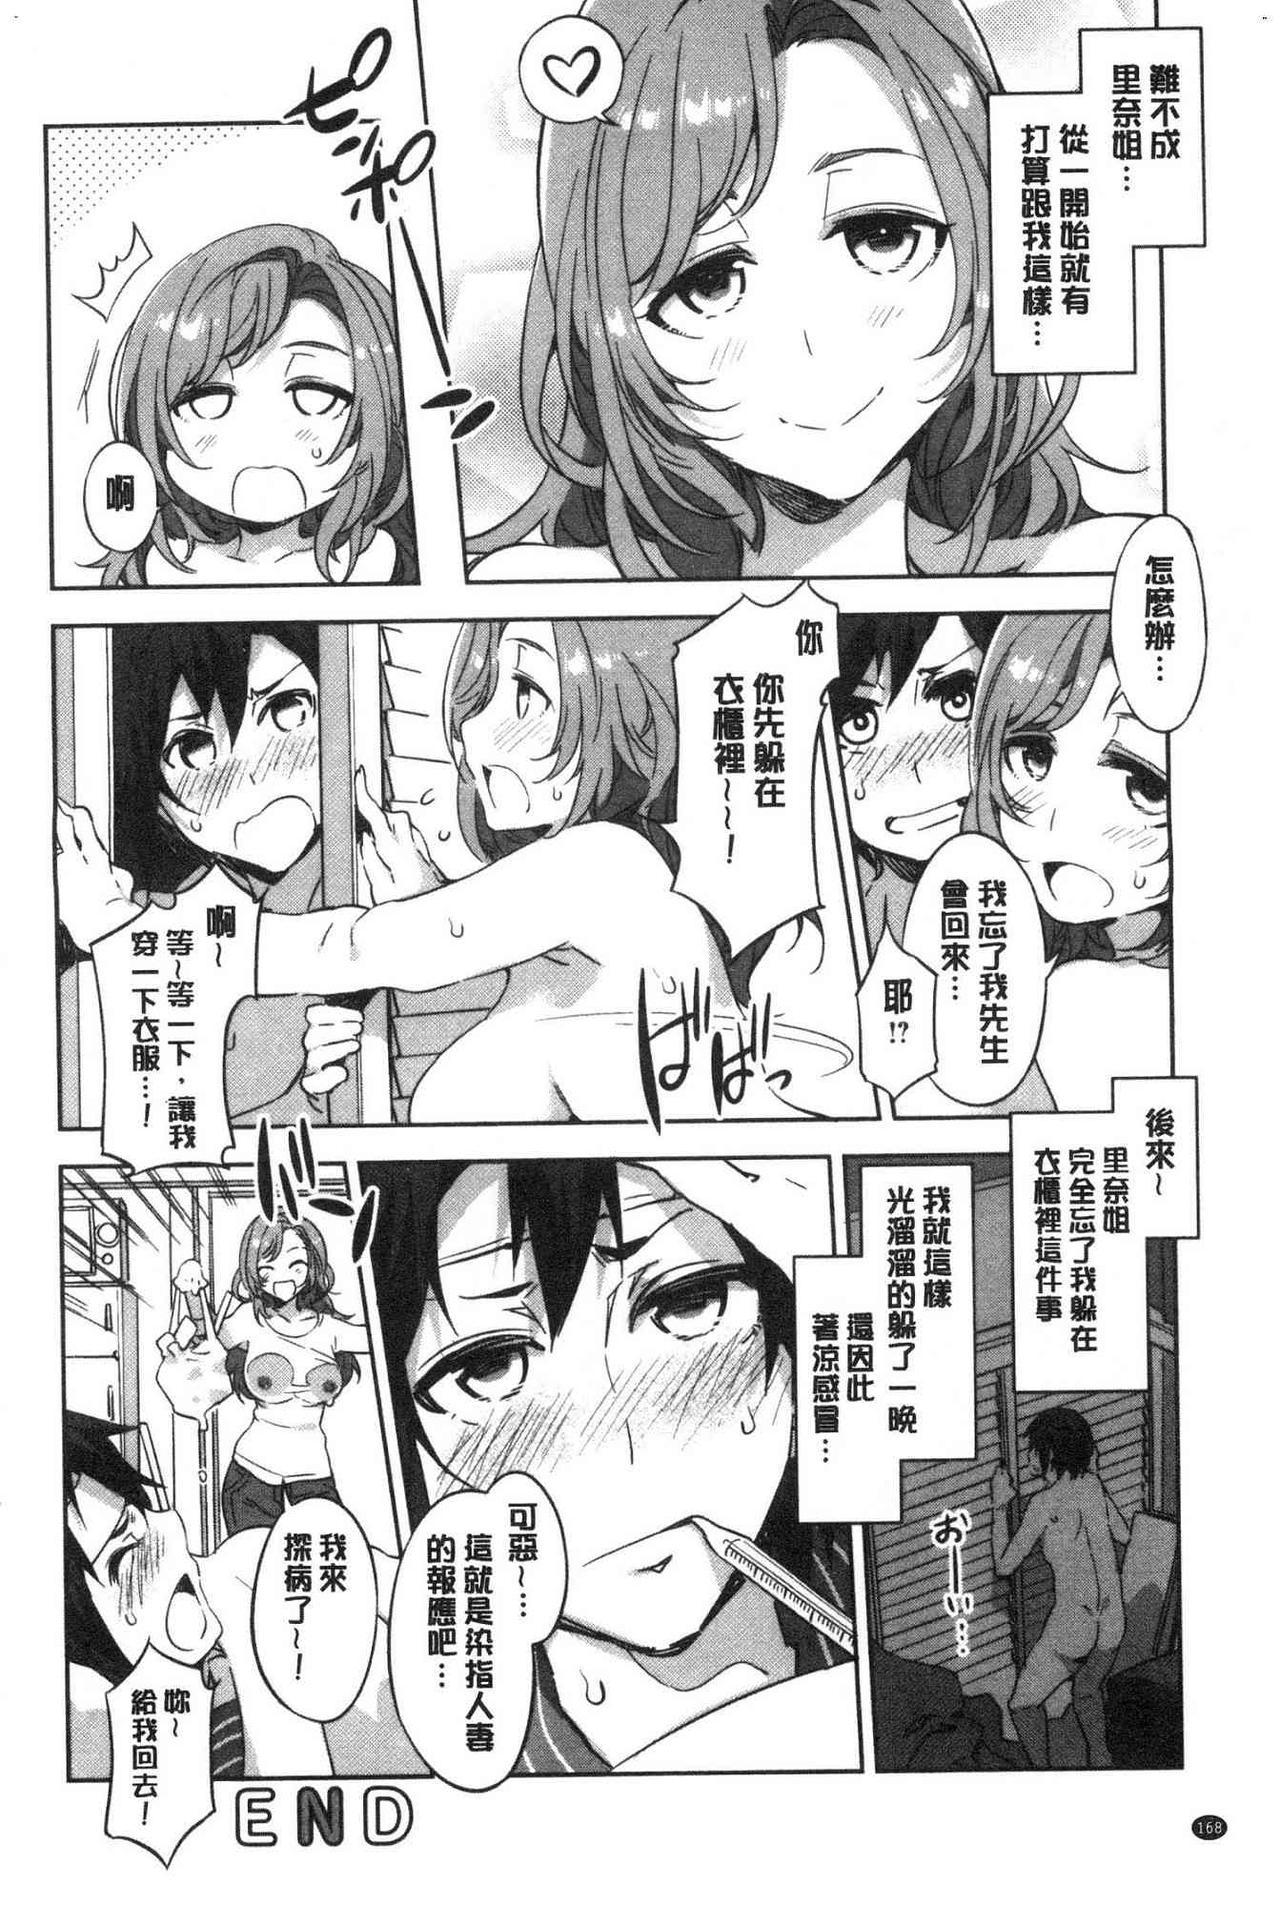 Shikiyoku INFINITE Page 169 Of 217 uncensored hentai, Shikiyoku INFINITE Pa...